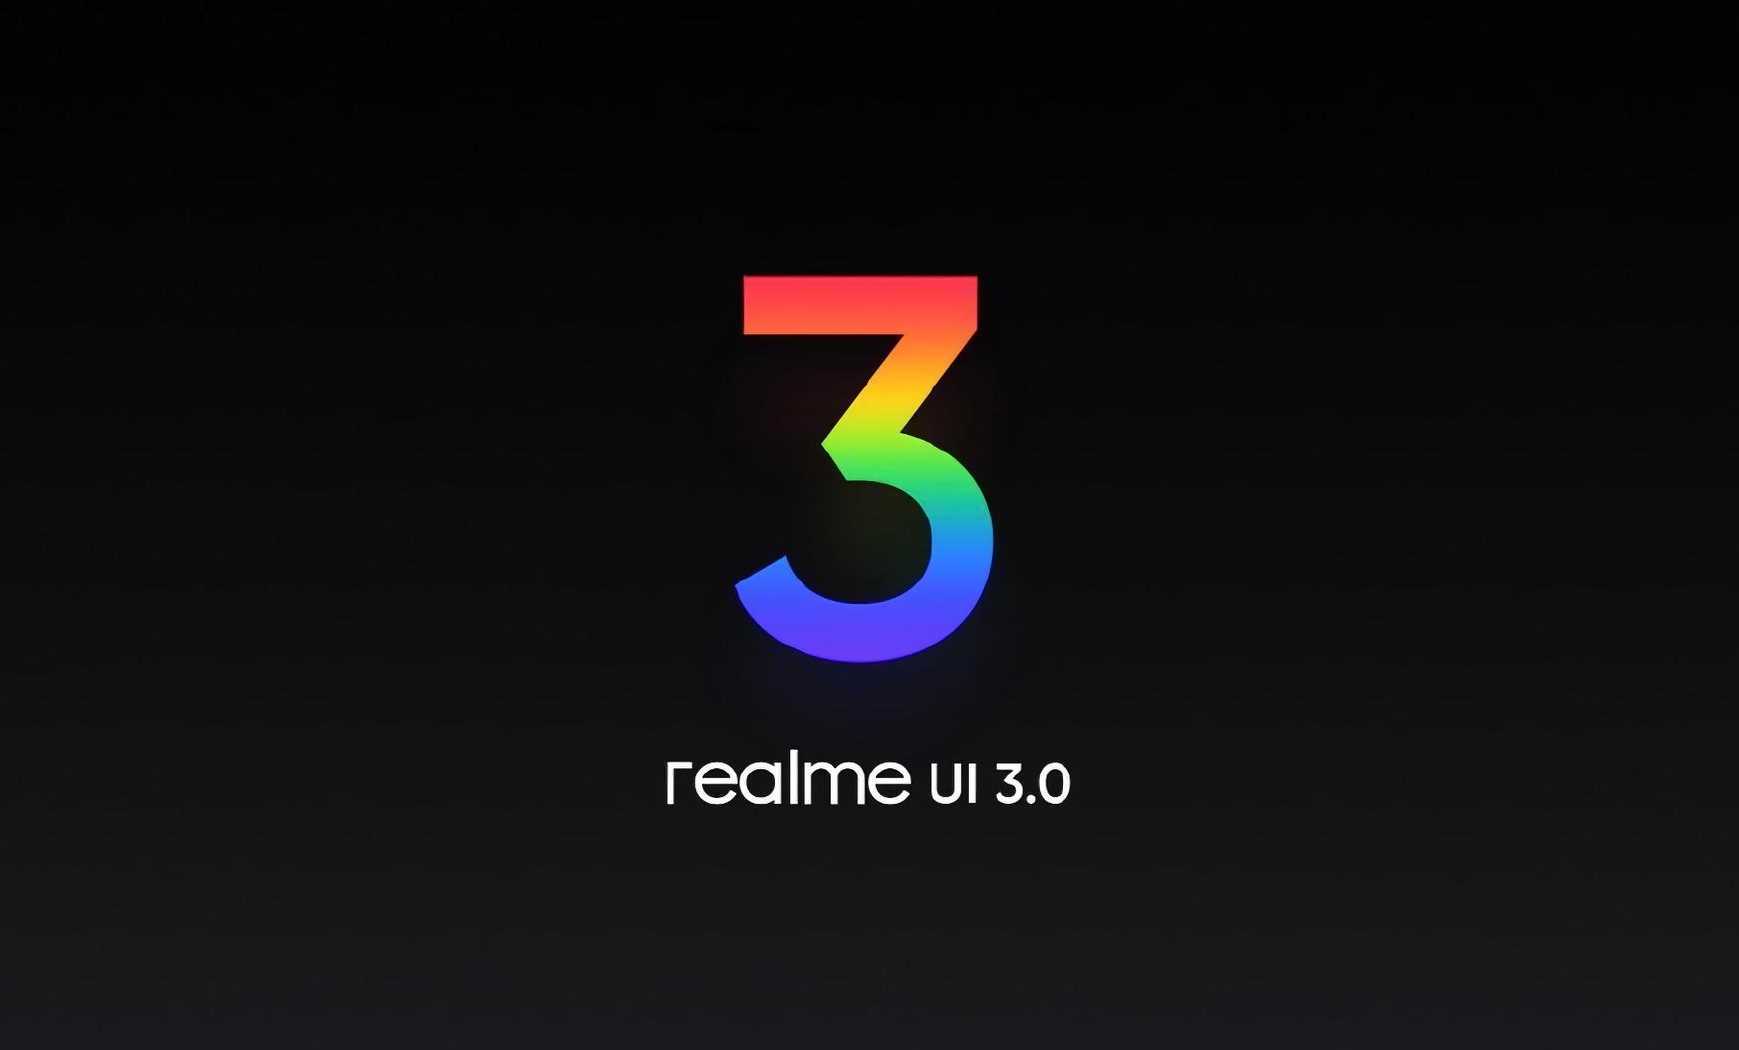 22 smartphones Realme recibirán el firmware Realme UI 3.0 - lista oficial publicada